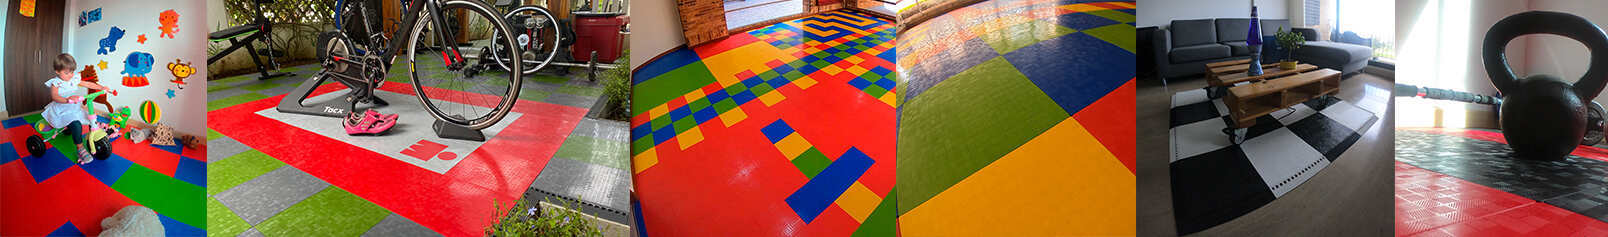 Imagen de instalaciones de pisos coloridos para niÃ±os resistentes Easydeck liso